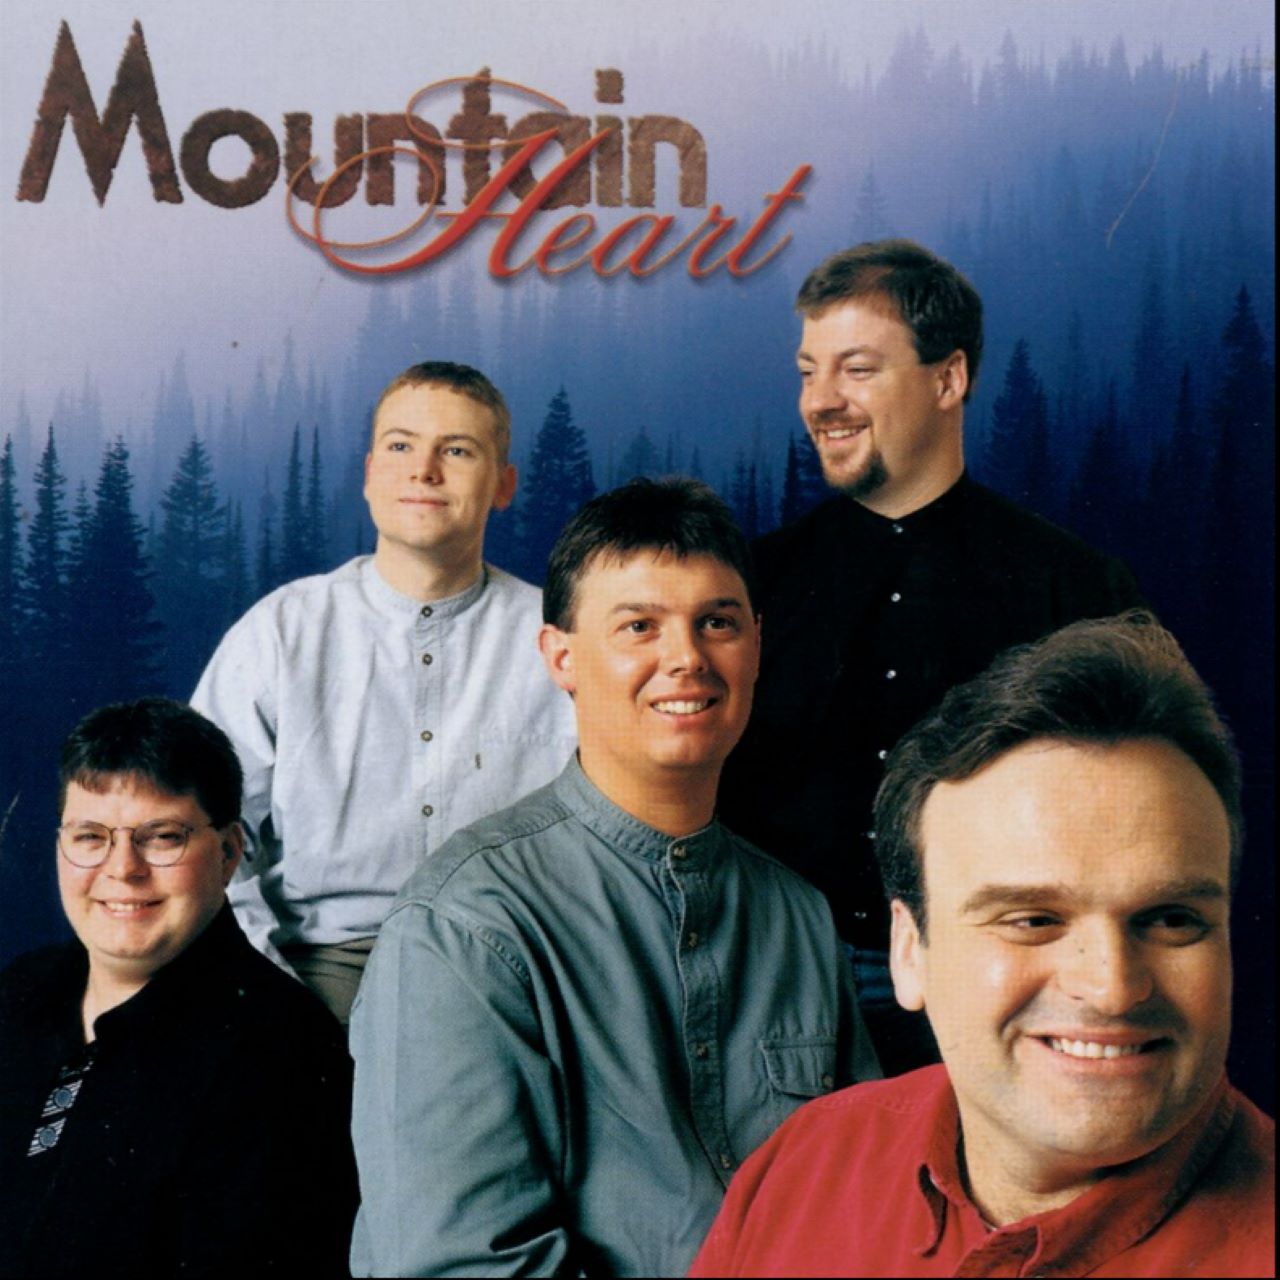 Mountain Heart – Mountain Heart cover album